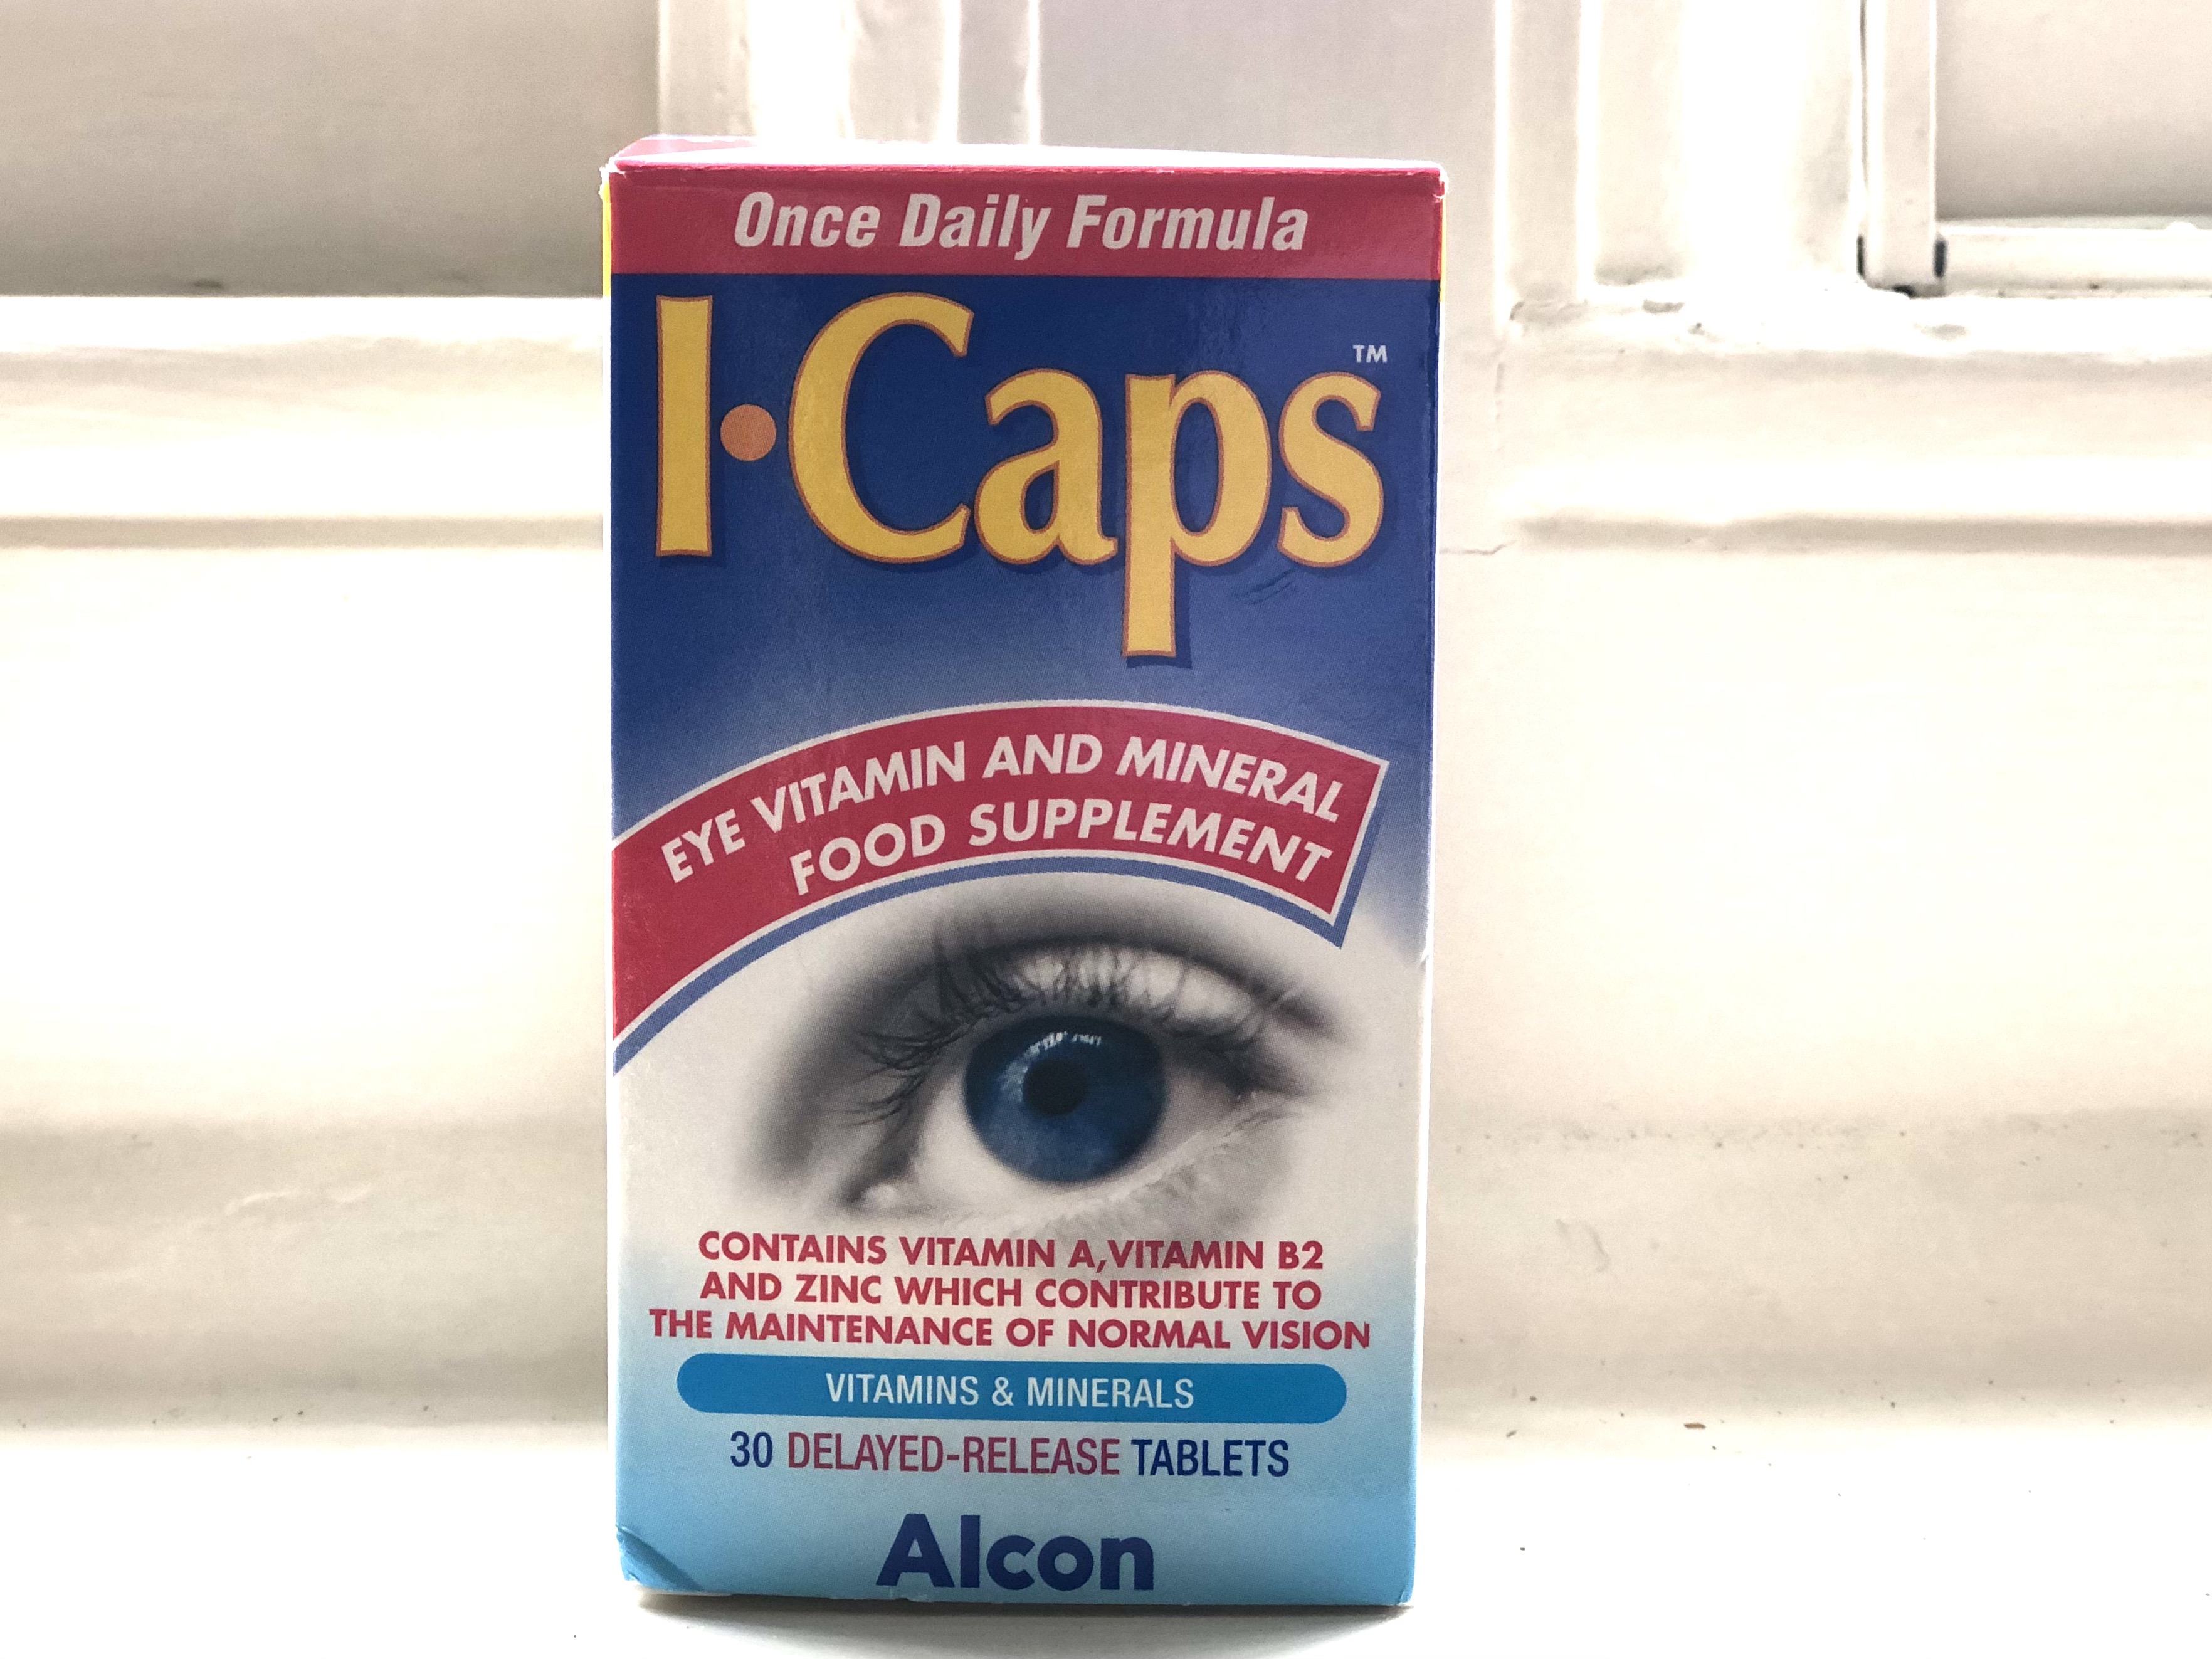 루테인 눈 영양제, 눈 비타민, 눈 건강 보조제, I caps 눈 건강 보조제
